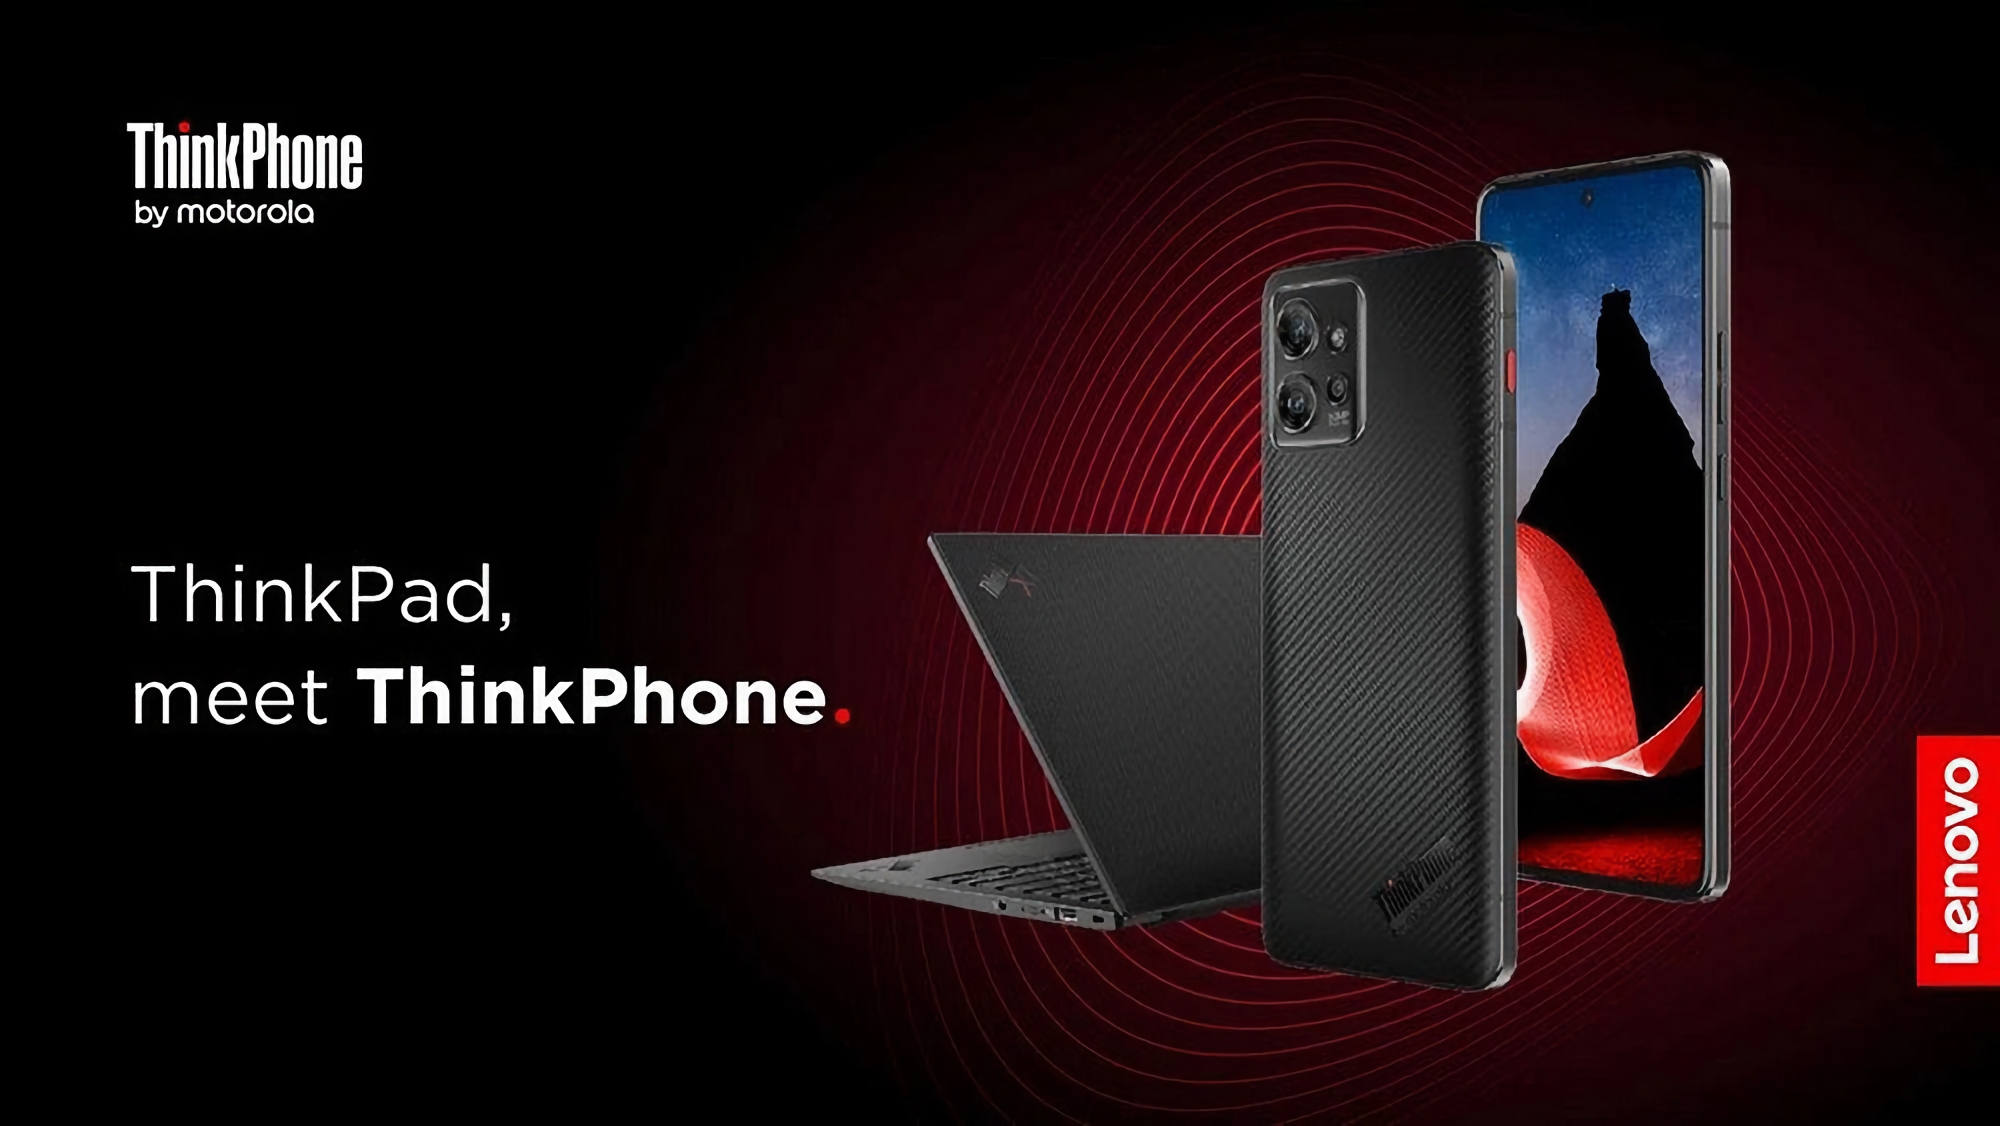 Le ThinkPhone de Motorola, doté d'une puce Snapdragon 8+ Gen 1, d'un écran 144 Hz et d'une protection IP68, sera commercialisé en Europe. La nouveauté coûtera 1000 euros.